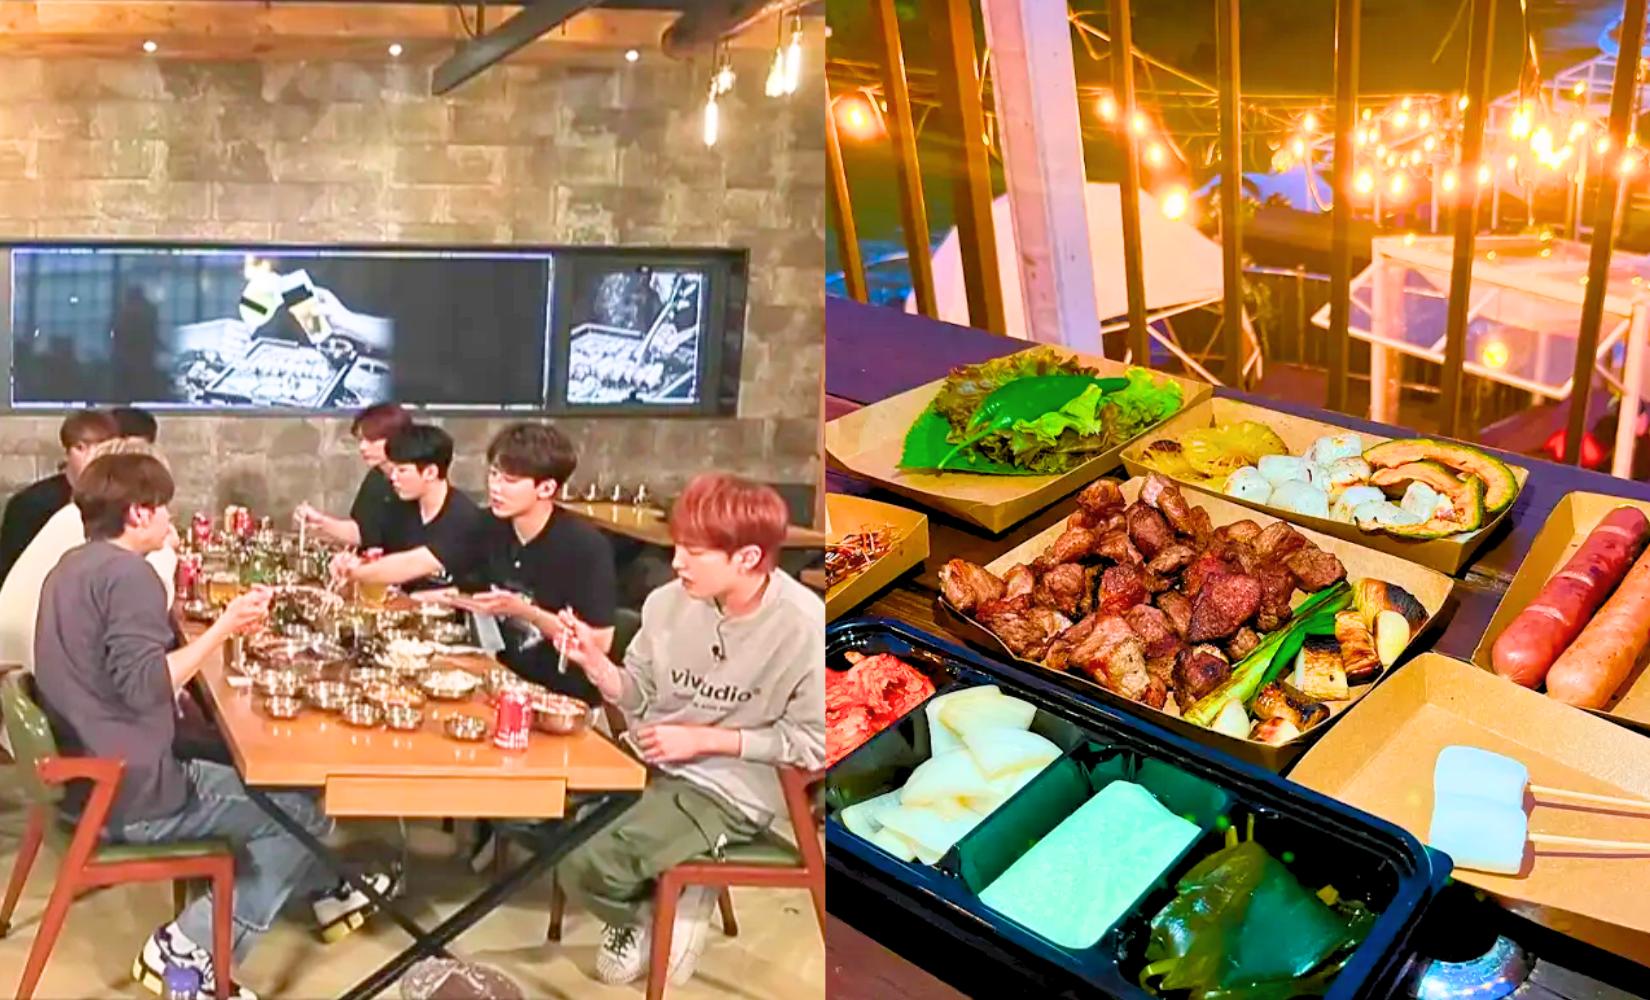 Tổng hợp các nhà hàng nổi tiếng ở Hàn Quốc các Kpop idol từng đến